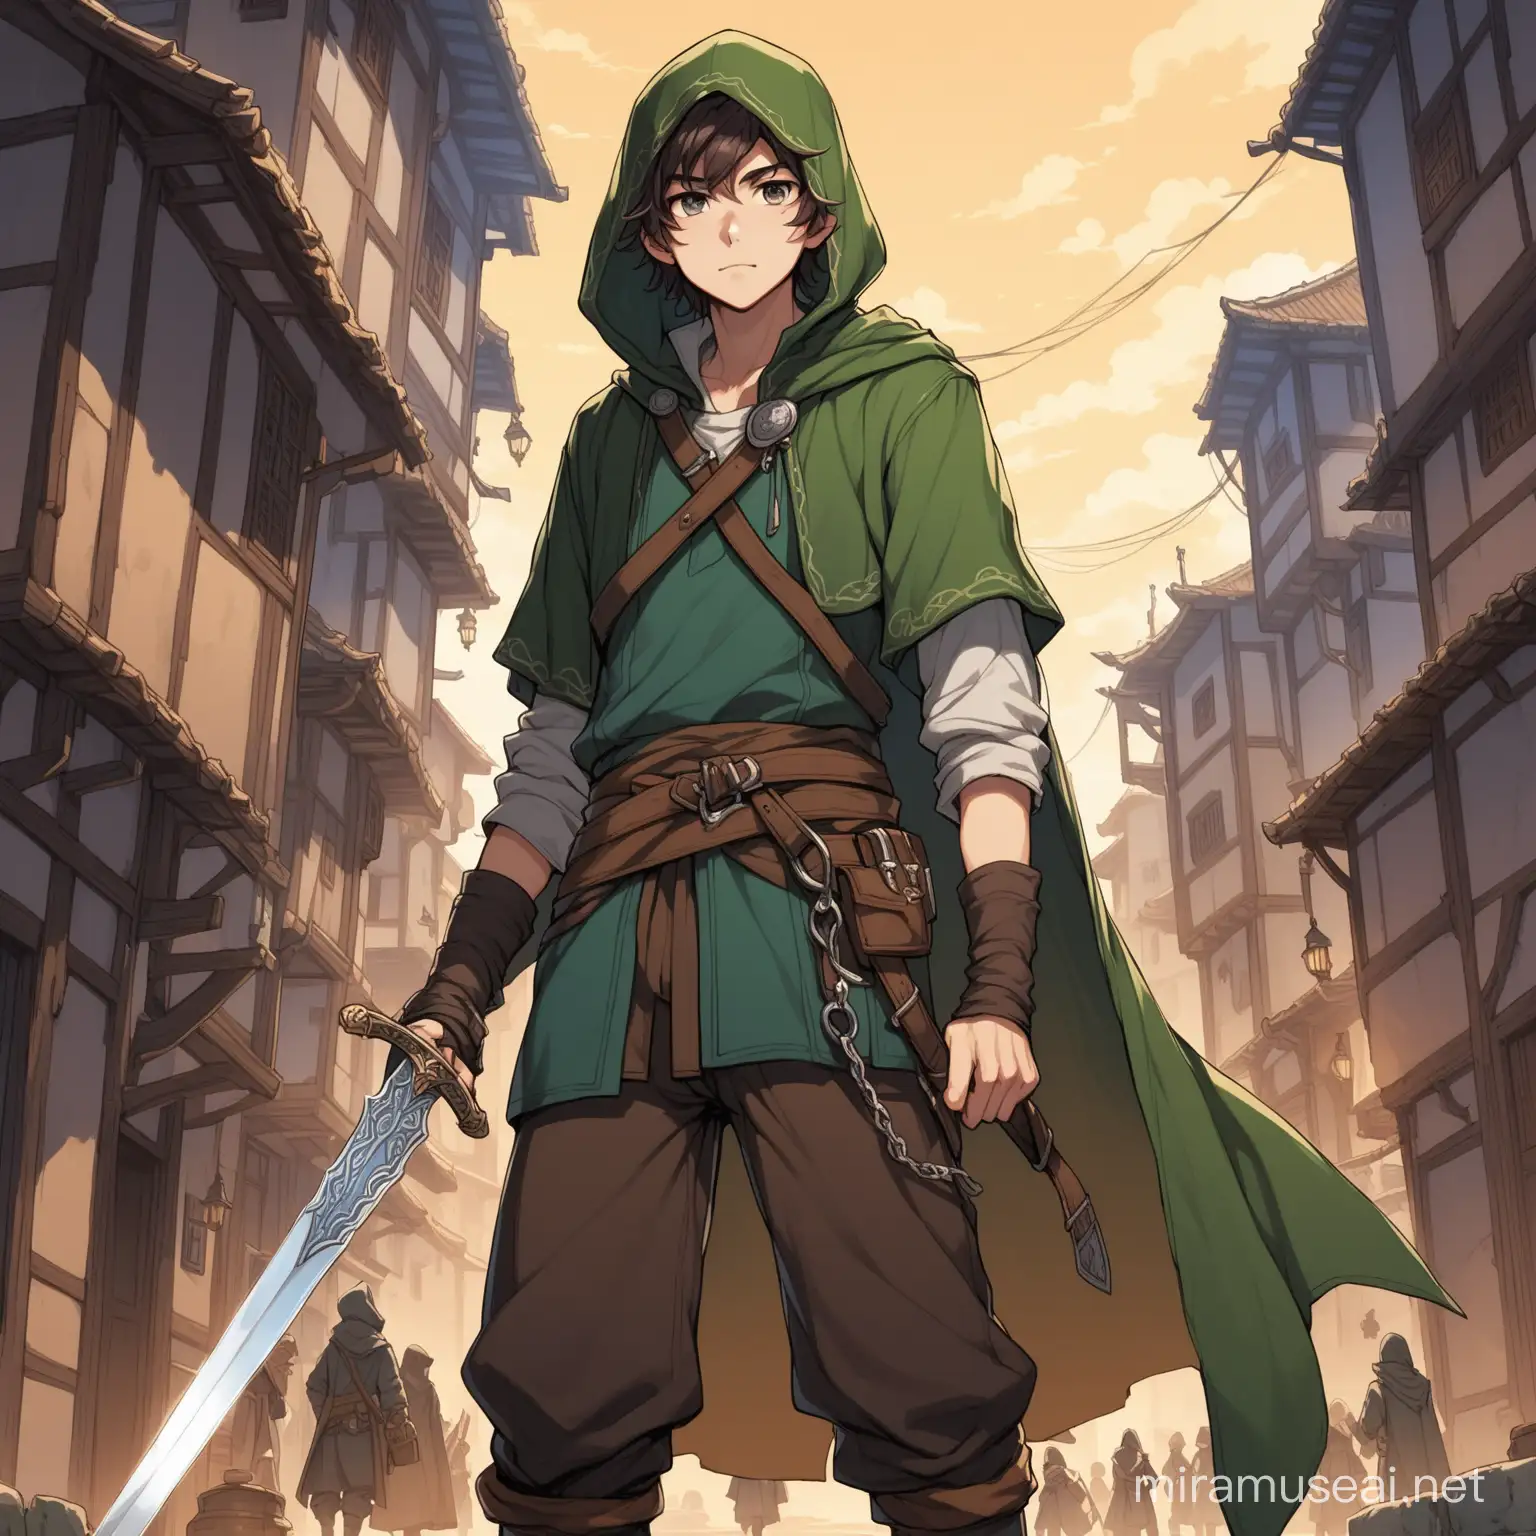 Tall Teen Rogue Male Wielding Sword in Urban Alleyway